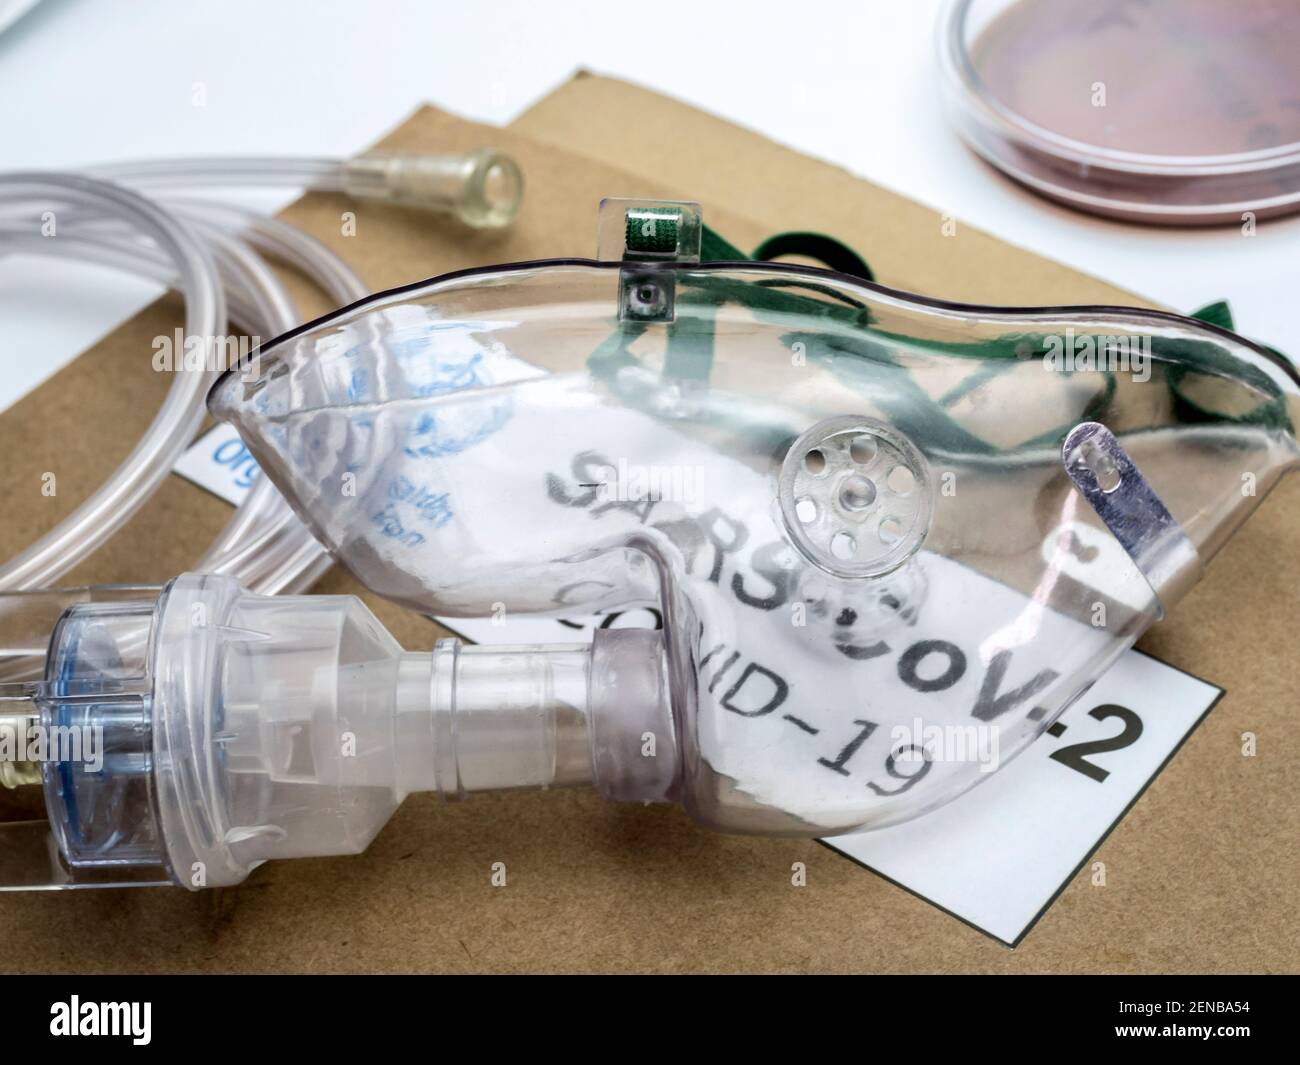 Maschera ossigeno e nebulizzatori pronti per l'applicazione, immagine concettuale Foto Stock